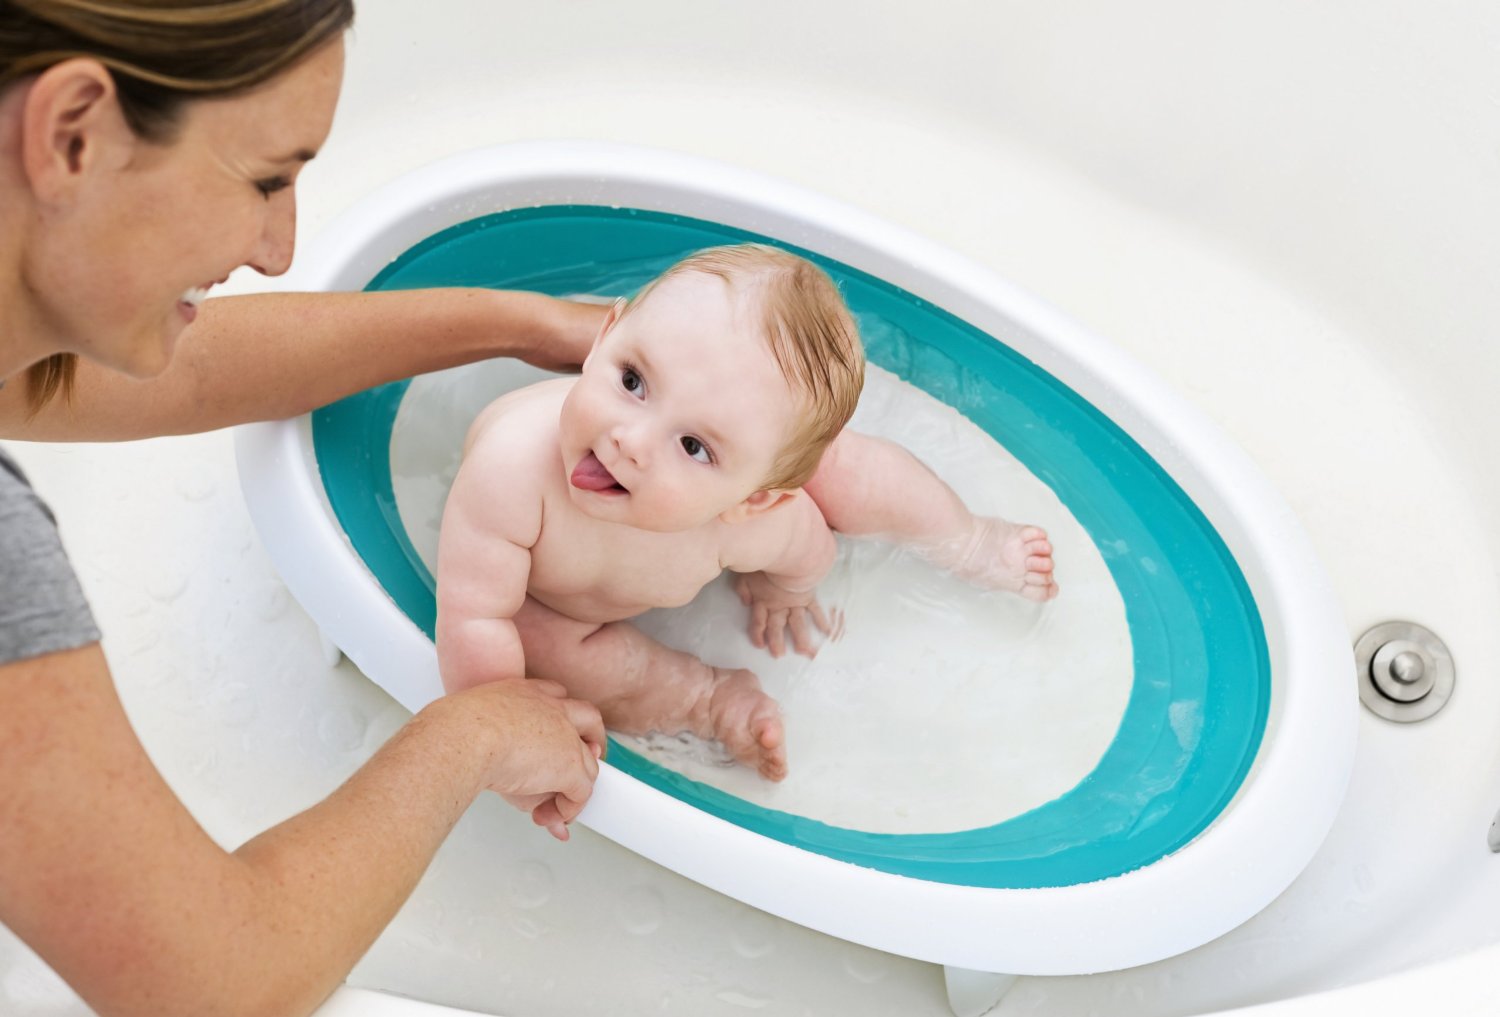 Transat de bain bébé - MON MOBILIER DESIGN - Vert - Ergonomique et